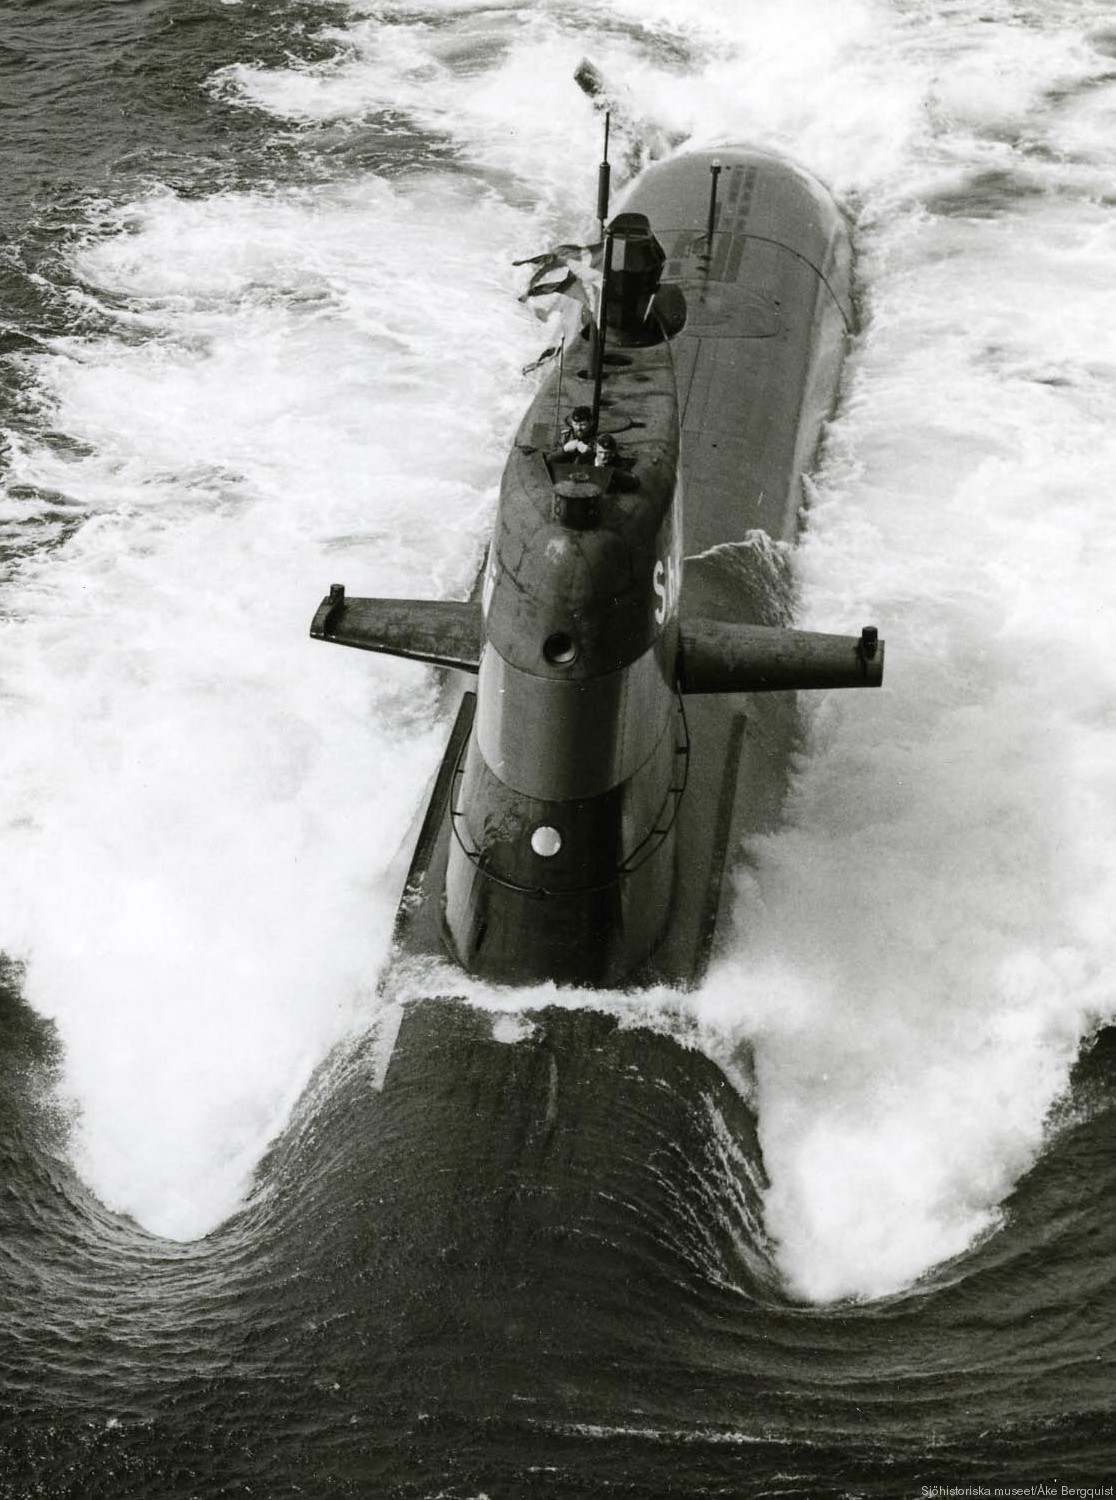 hswms hms sjöhästen shä sjöormen a11 class submarine ssk swedish navy svenska marinen försvarsmakten 05